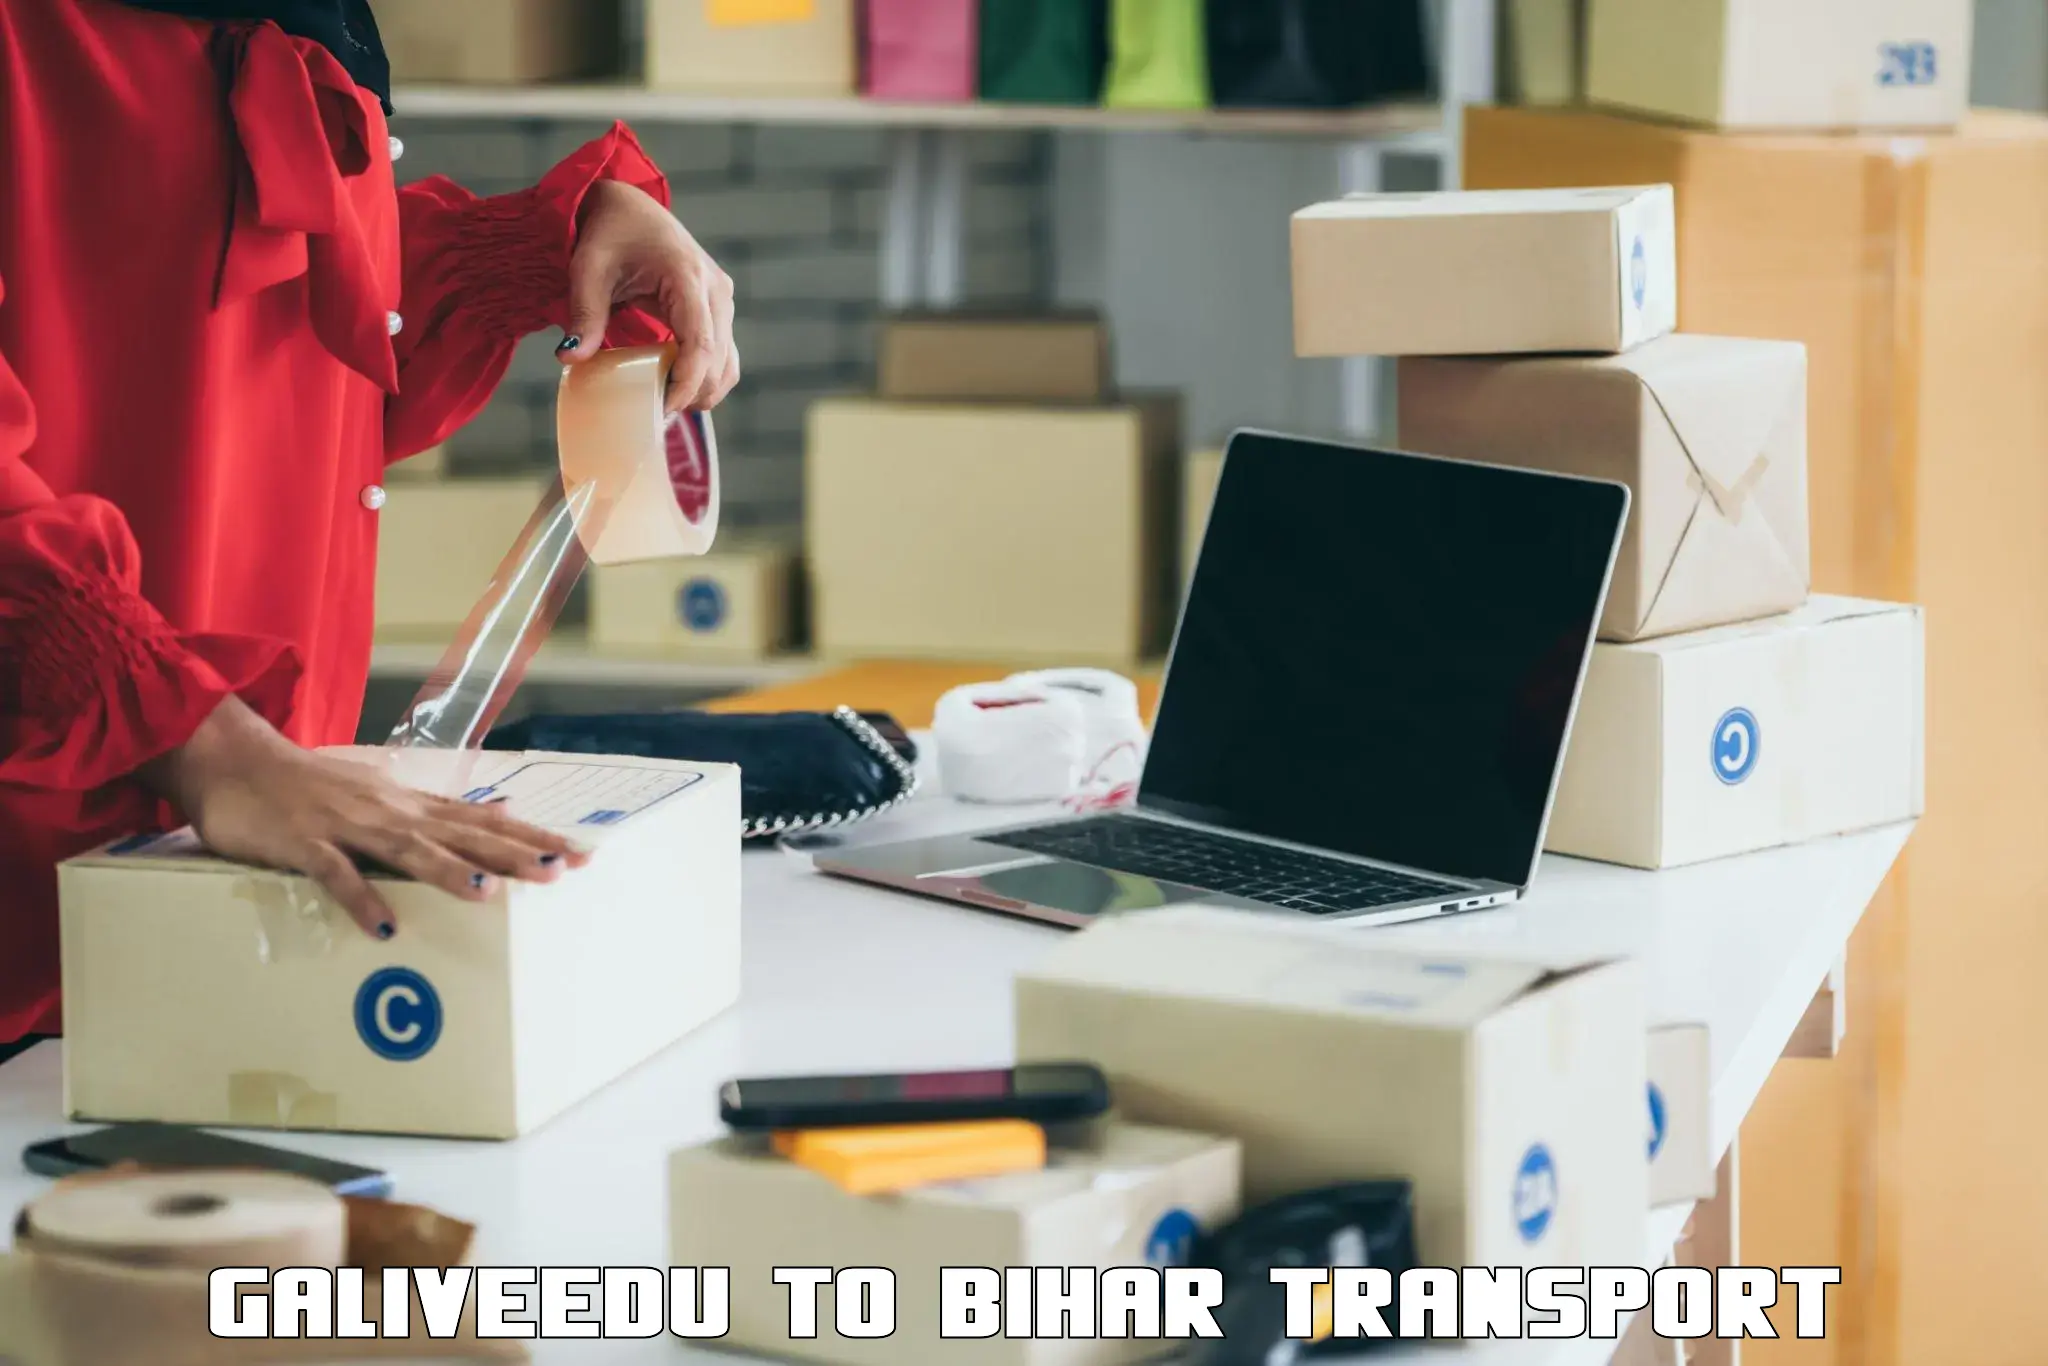 Online transport Galiveedu to Piro